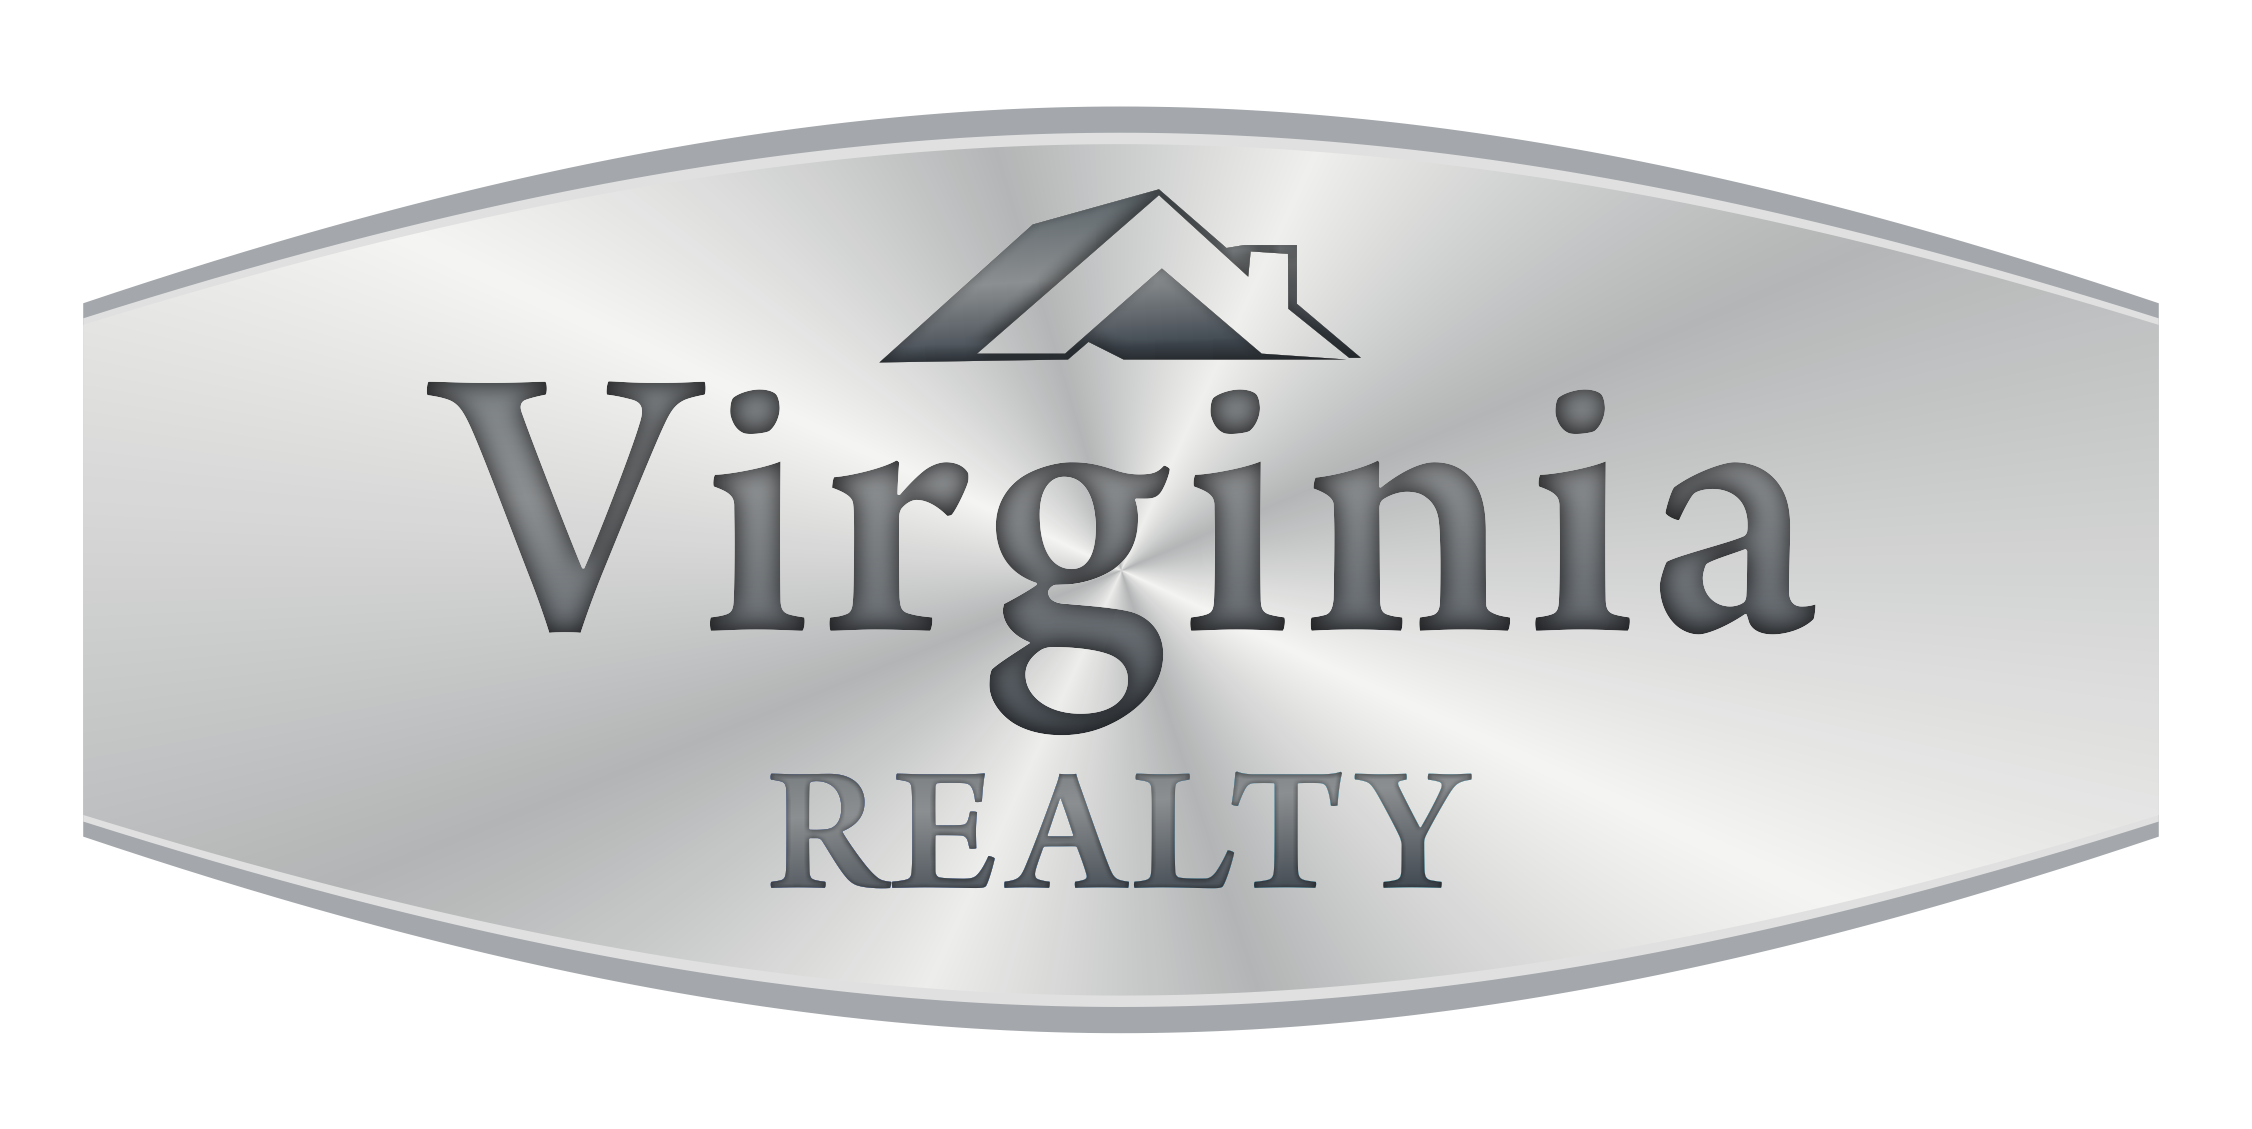 Virginia Realty